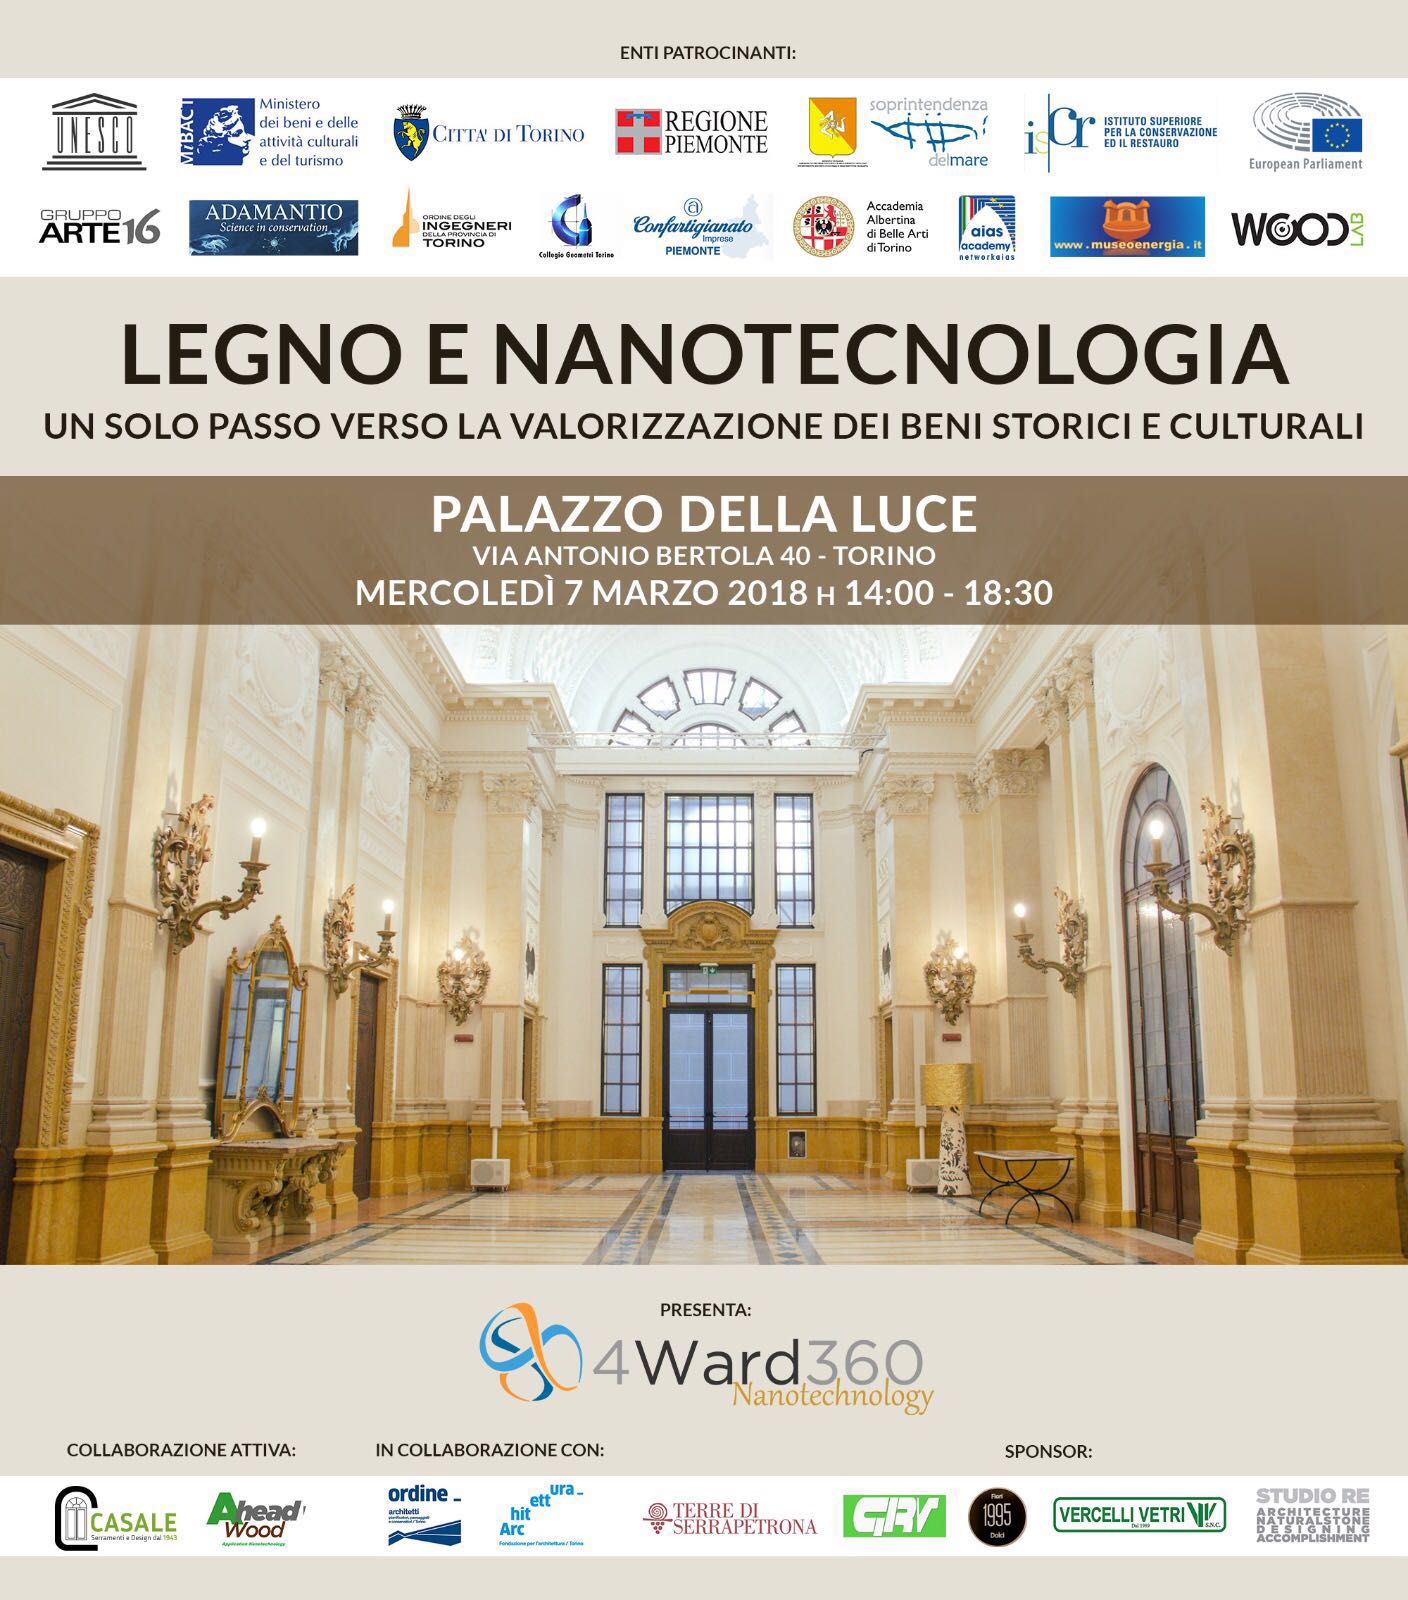 4ward360Nanotechnology nanotecnologia